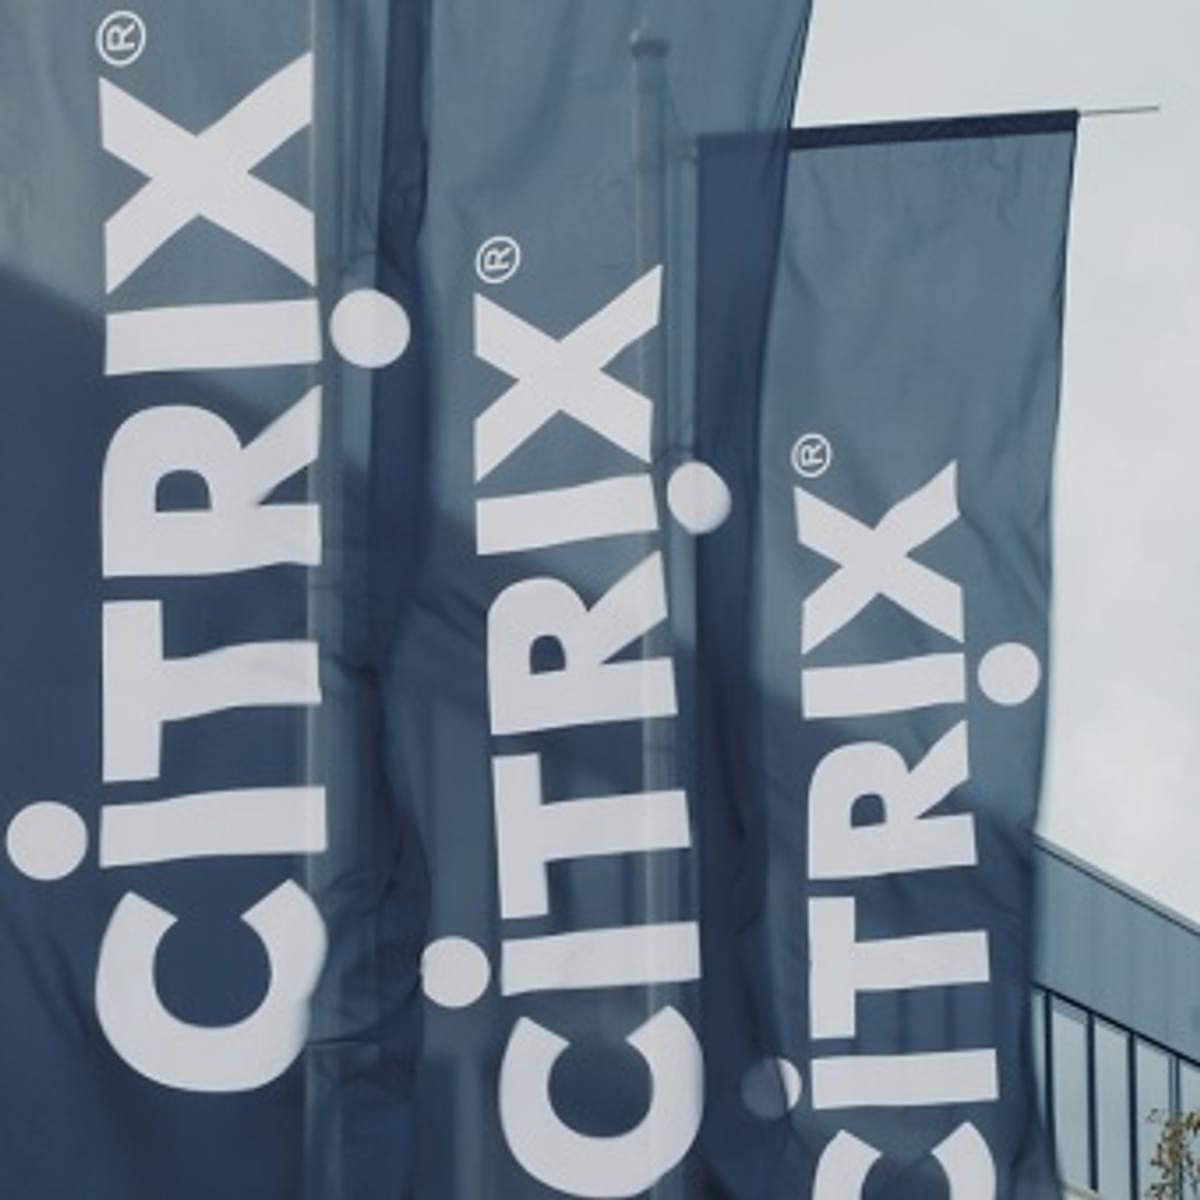 Bob Calderoni volgt David J. Henshall op als CEO Citrix image